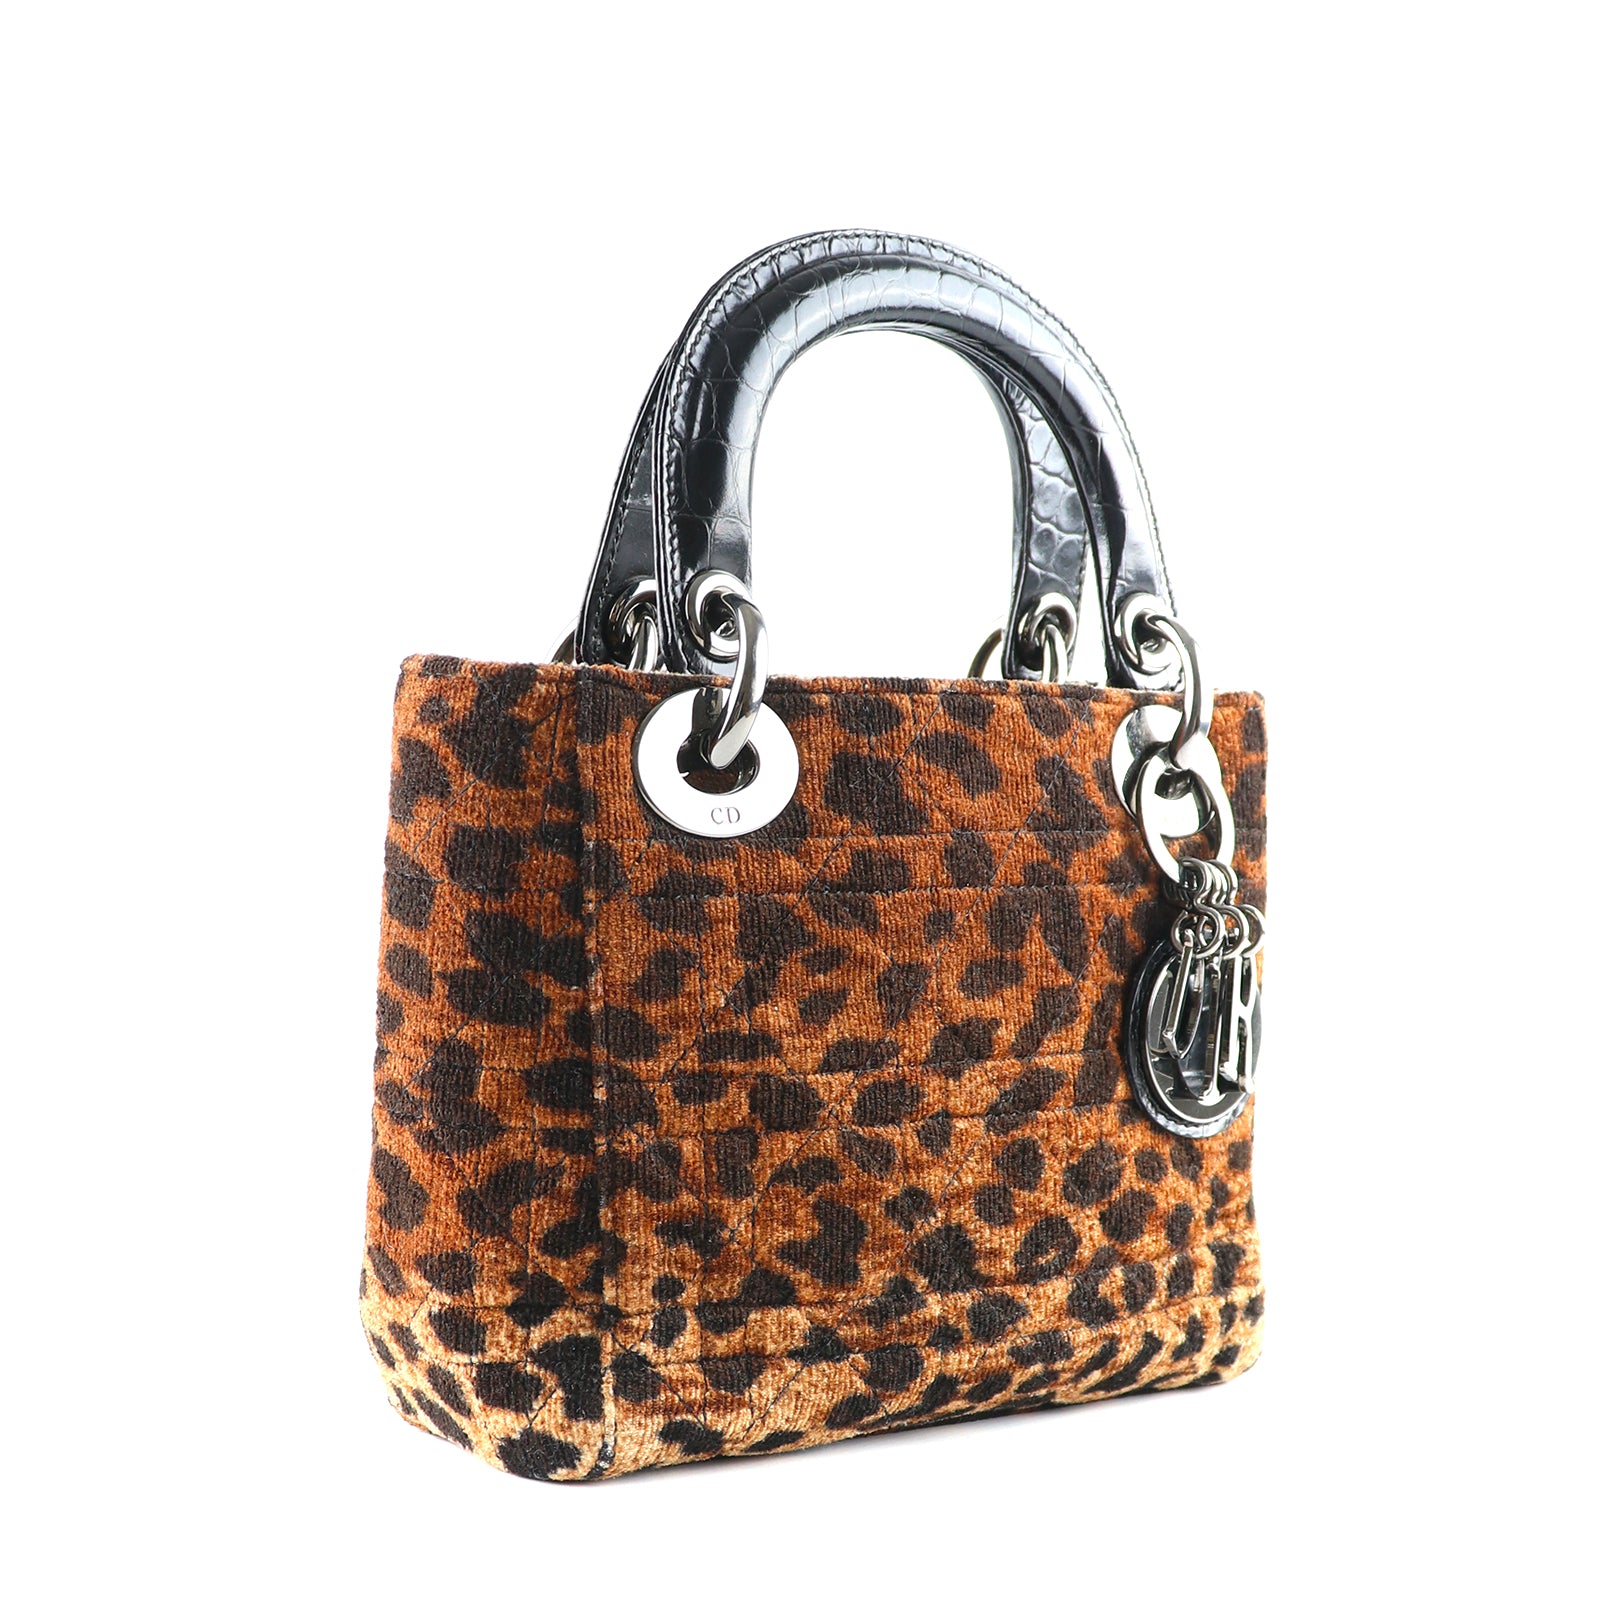 DIOR - Sac à main Lady Dior mini en toile léopard et cuir